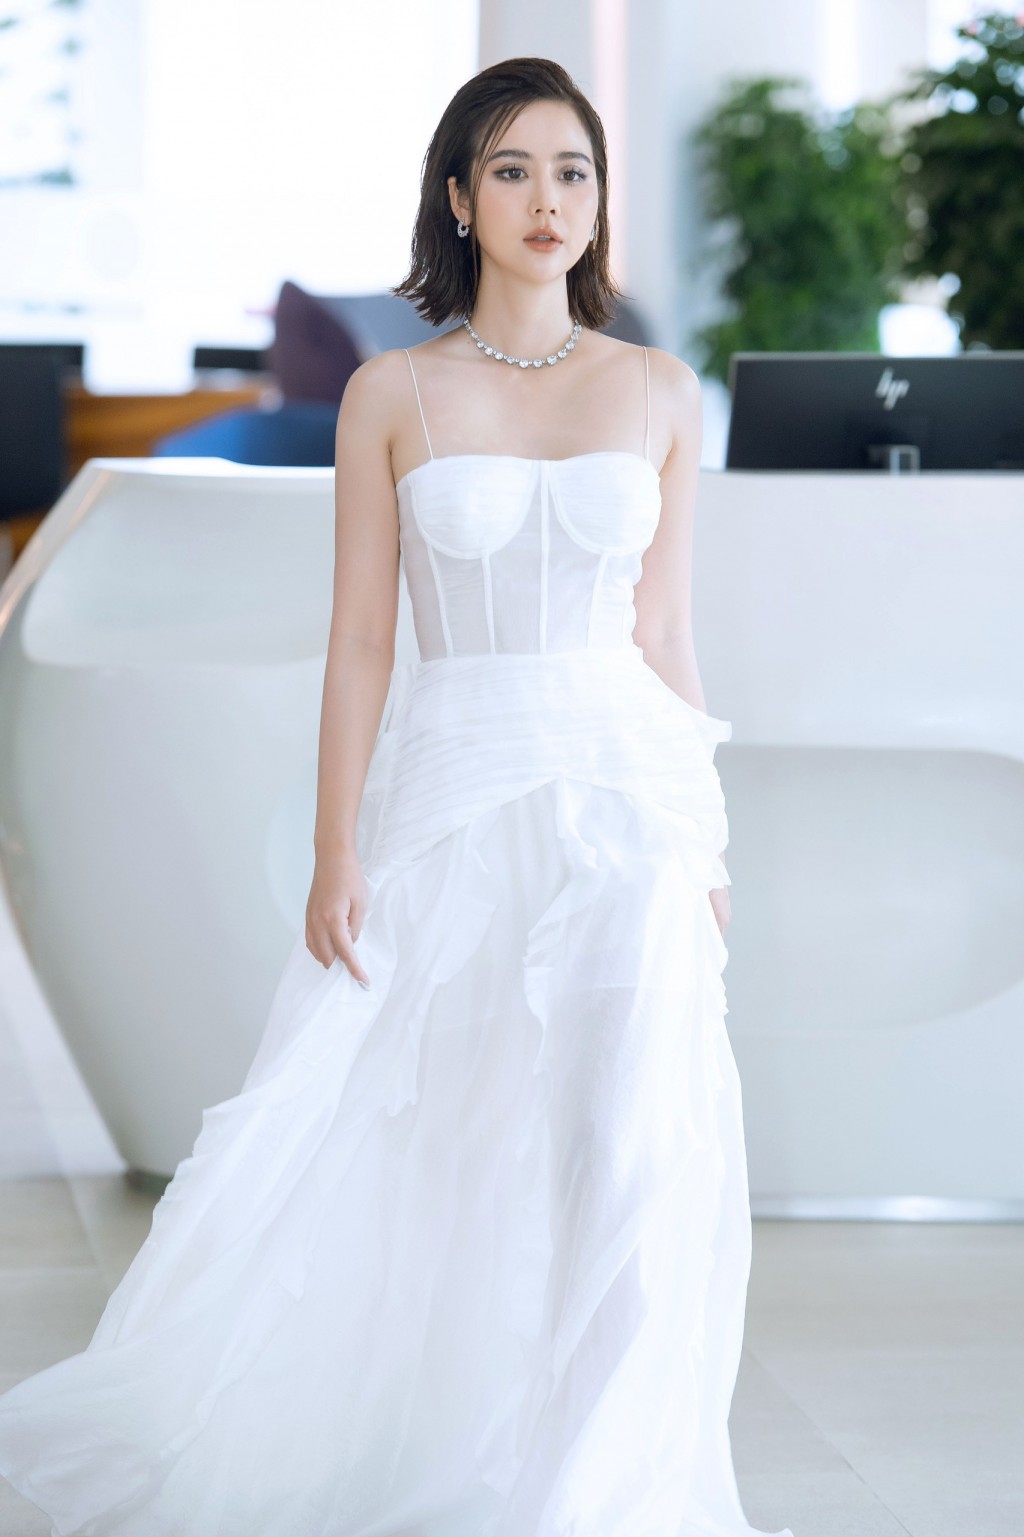 Phan Minh Huyền khiến công chúng ngây ngất với vẻ đẹp nữ thần khi diện váy trắng-4